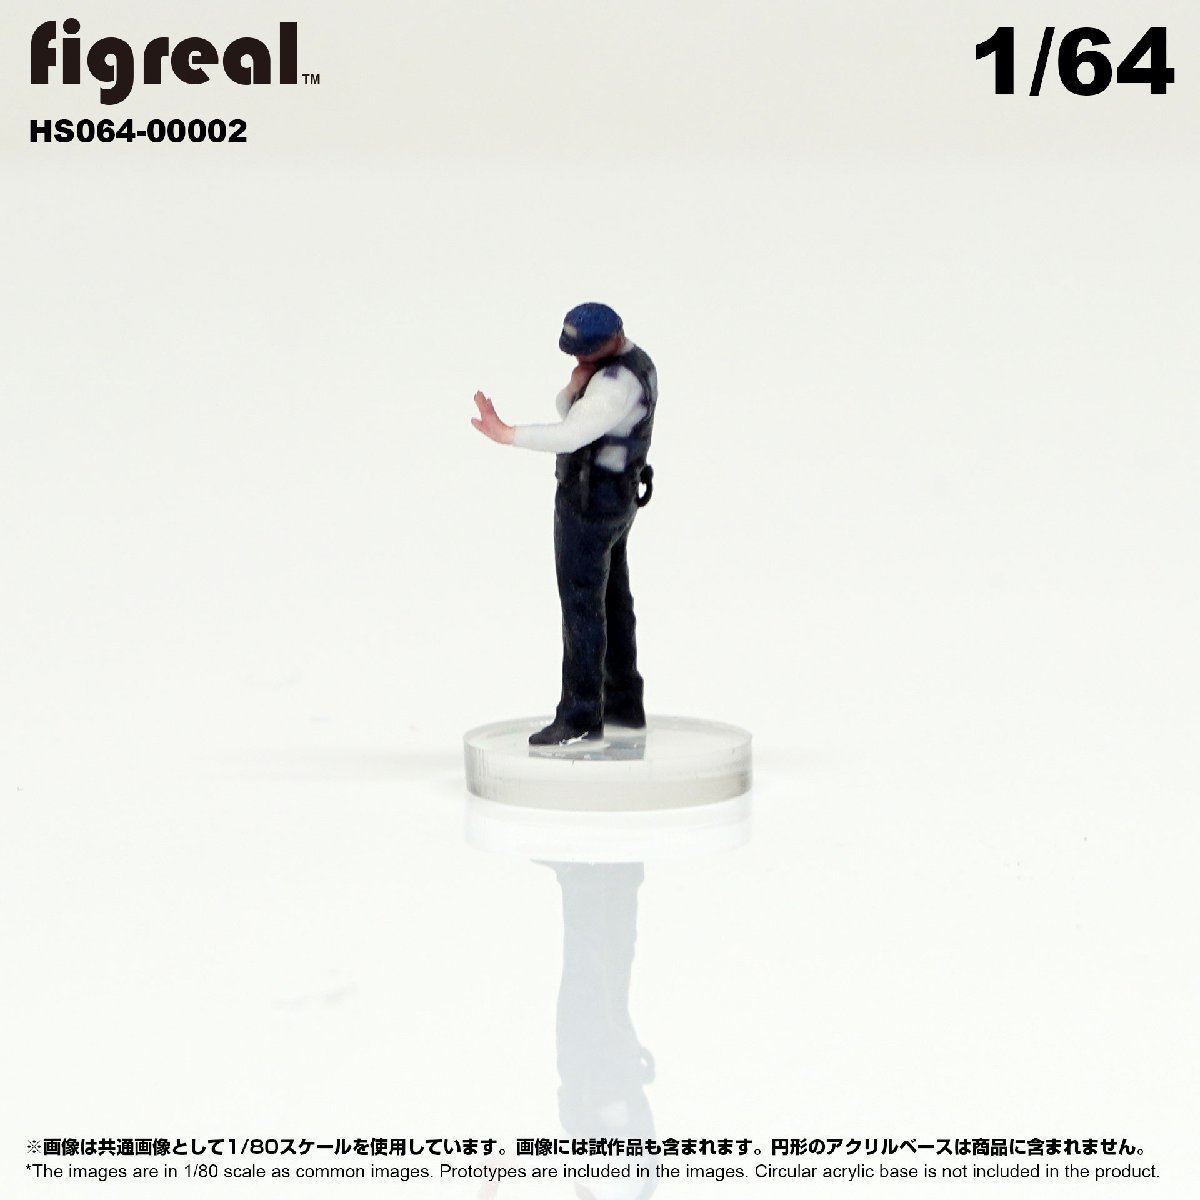 HS064-00002 figreal Япония полиция .1/64 высокая четкость фигурка 